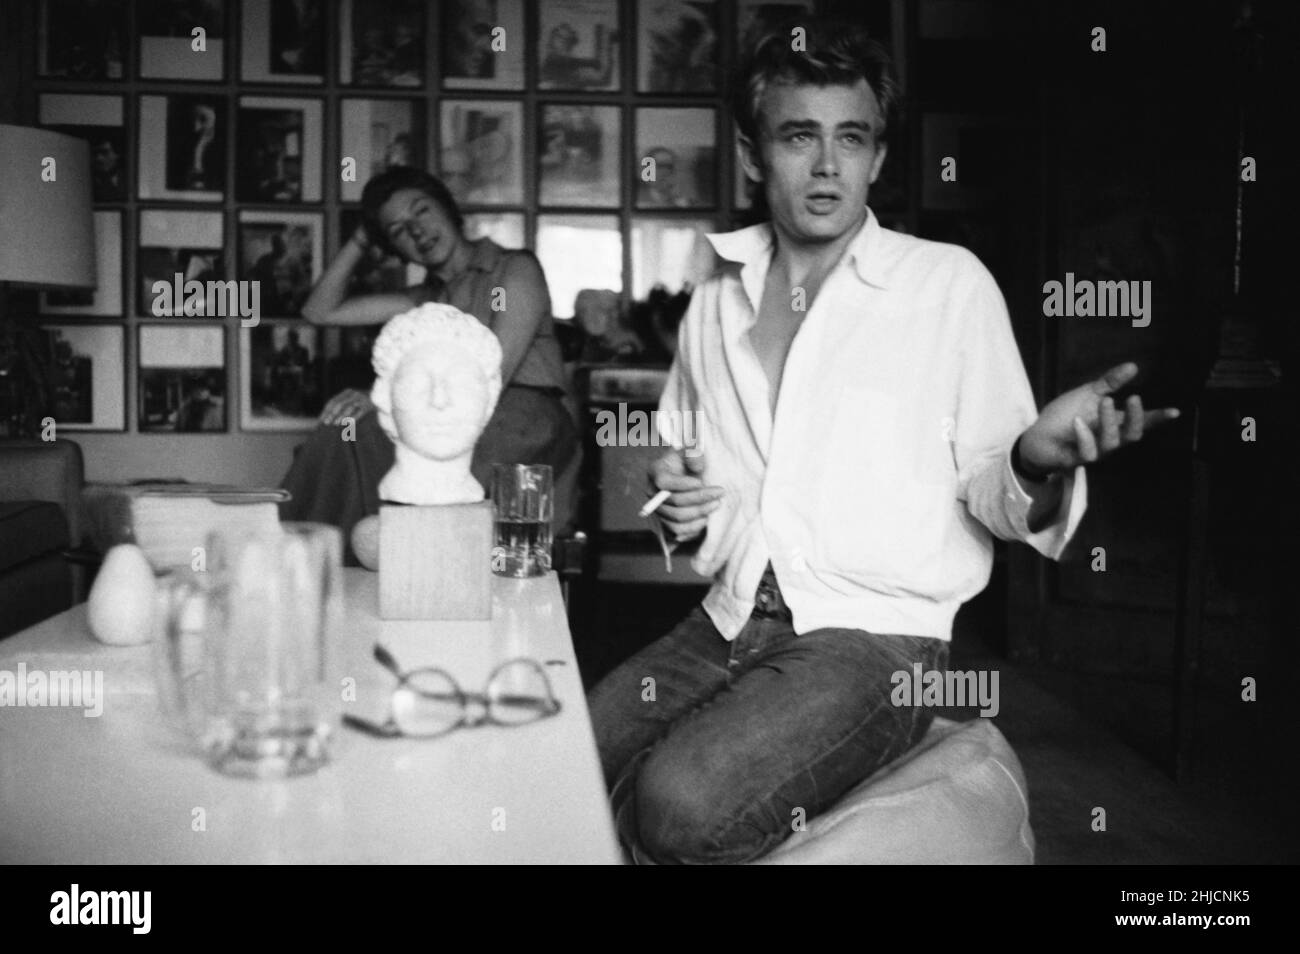 Schauspieler James Dean, fotografiert um 1955. Stockfoto